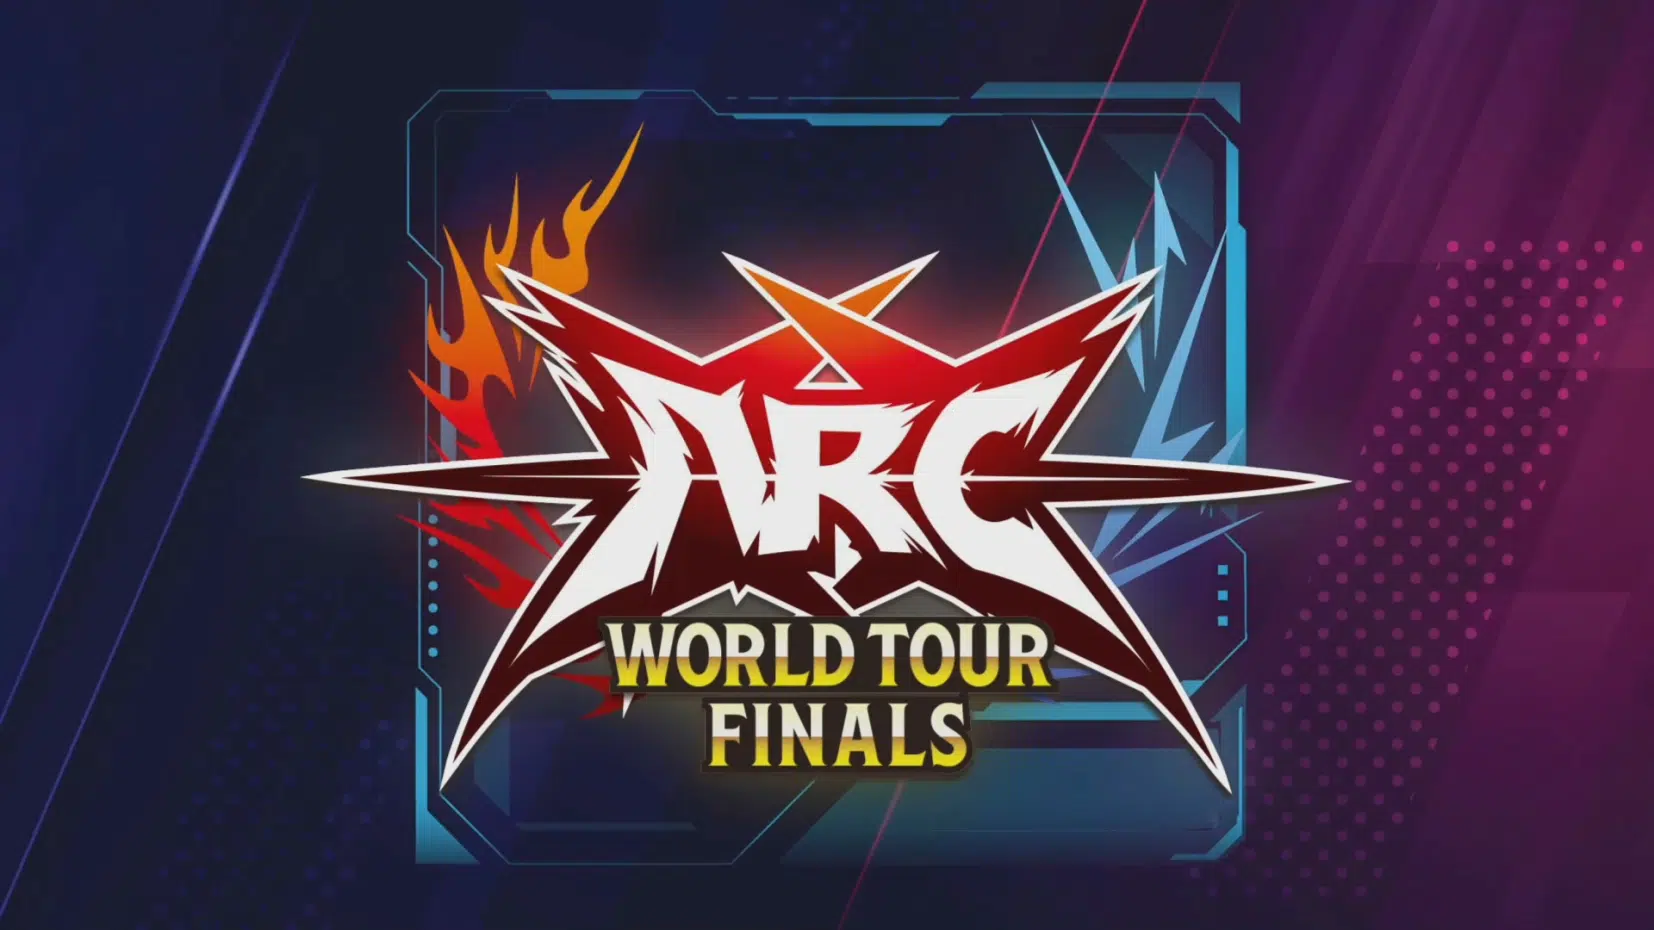 Arc World Tour Finals 2022 Guilty Gear Strive Livestream